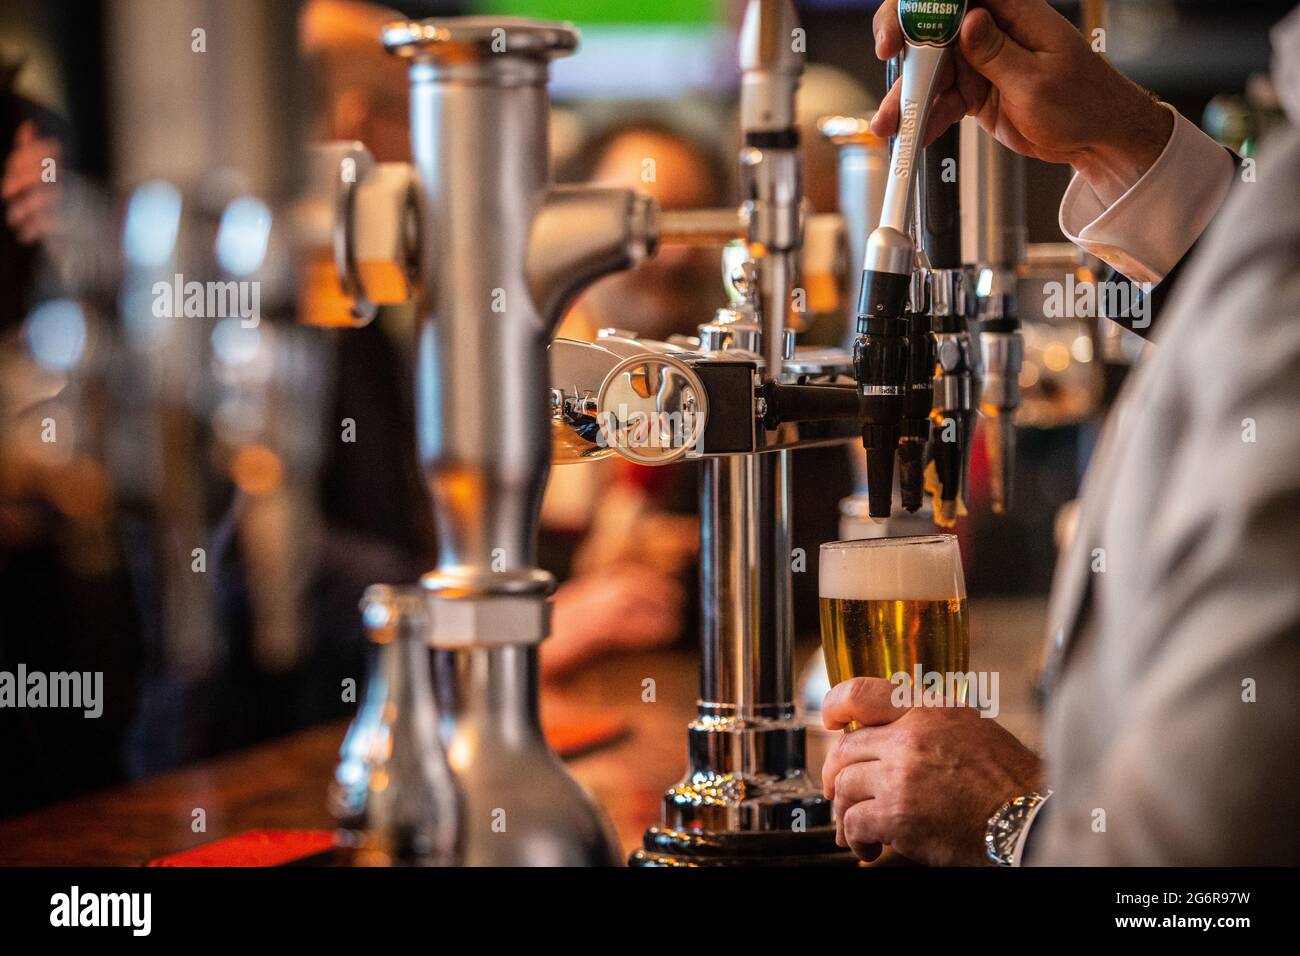 Ein Bier/Bier, das gegossen wurde, wurde hinter der Bar im Pub gesehen Stockfoto